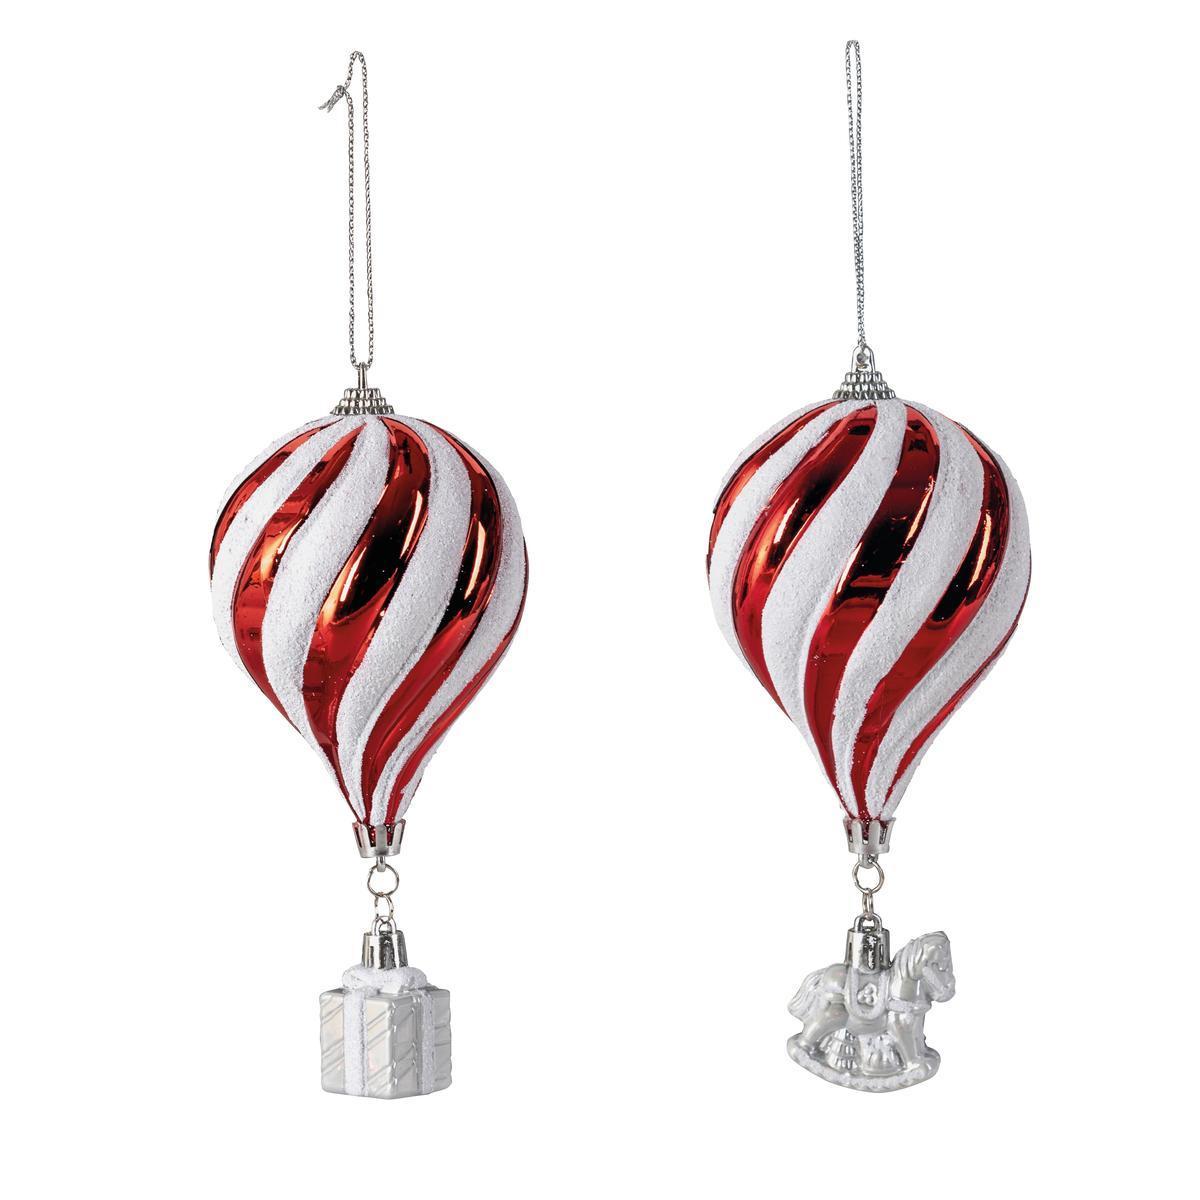 Suspension ballon + cadeau - ø 8 x H 18 cm - Différents modèles